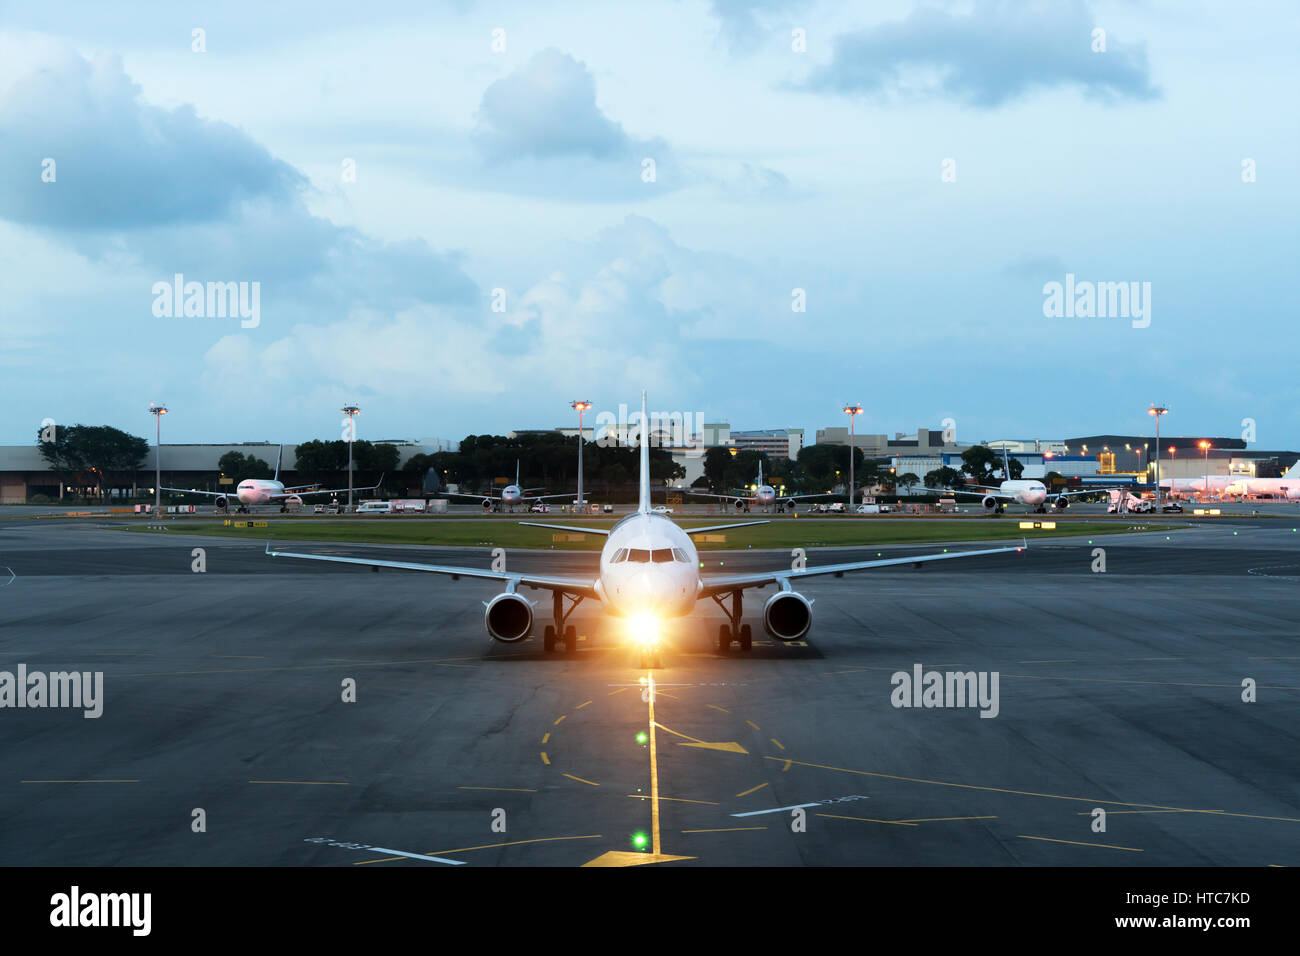 Weiße Passagierflugzeug startet von der Landebahn des Flughafens. Flugzeug bewegt sich vor dem Hintergrund der Nacht. Flugzeug-Vorderansicht. Stockfoto